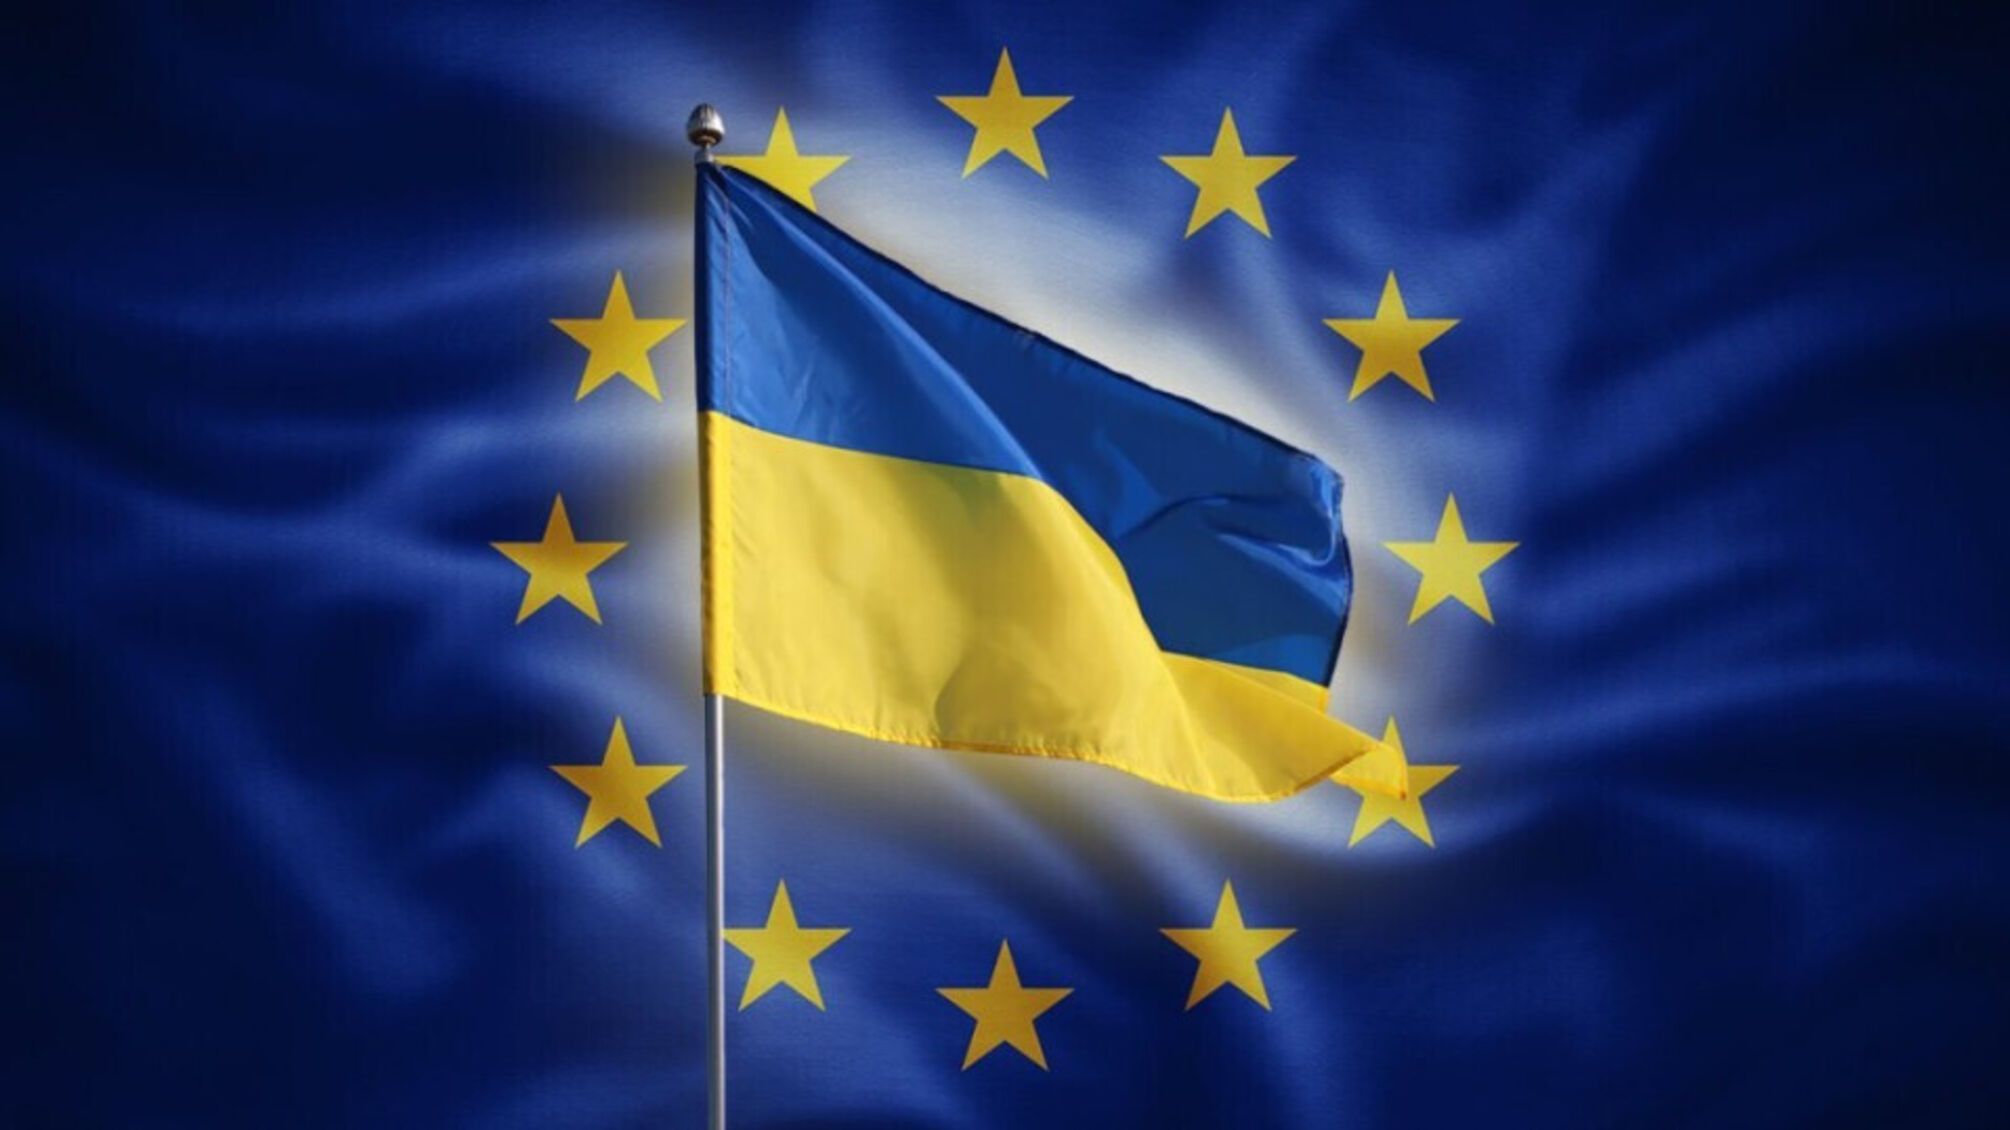 Европарламент принял резолюцию о вступлении Украины в Евросоюз